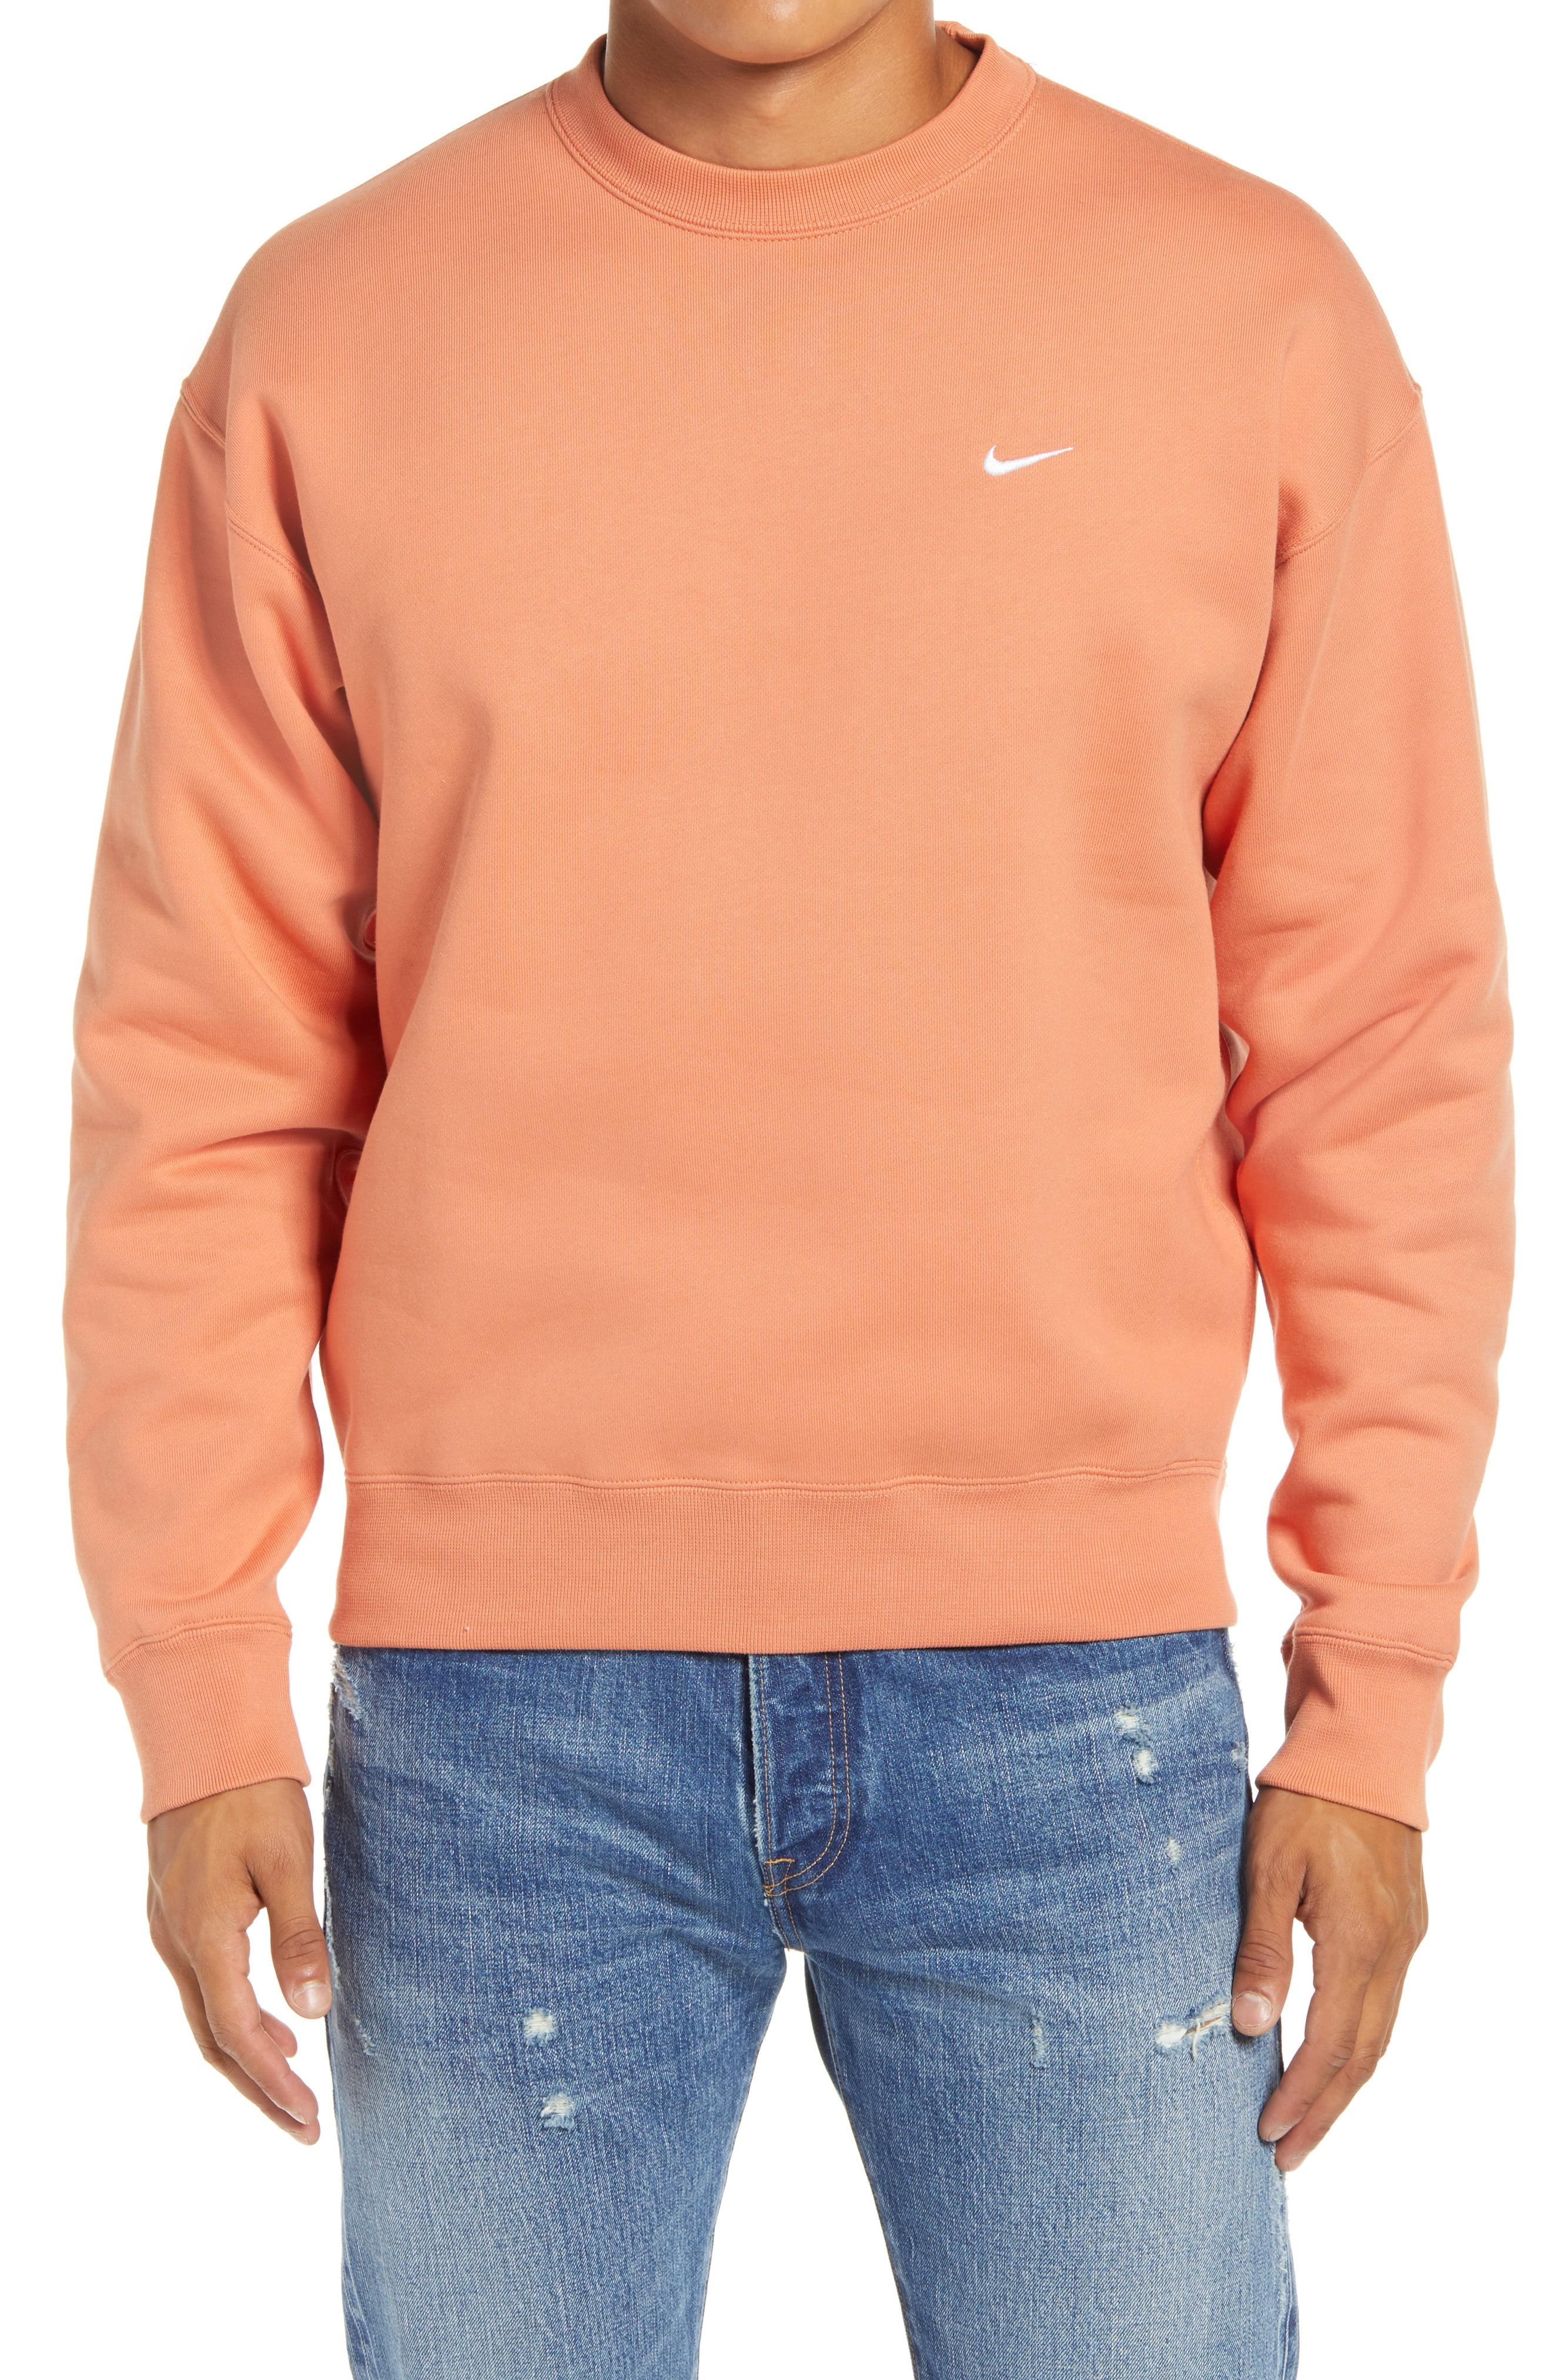 Nike Nrg Men's Crewneck Fleece Sweatshirt in Orange for Men - Lyst